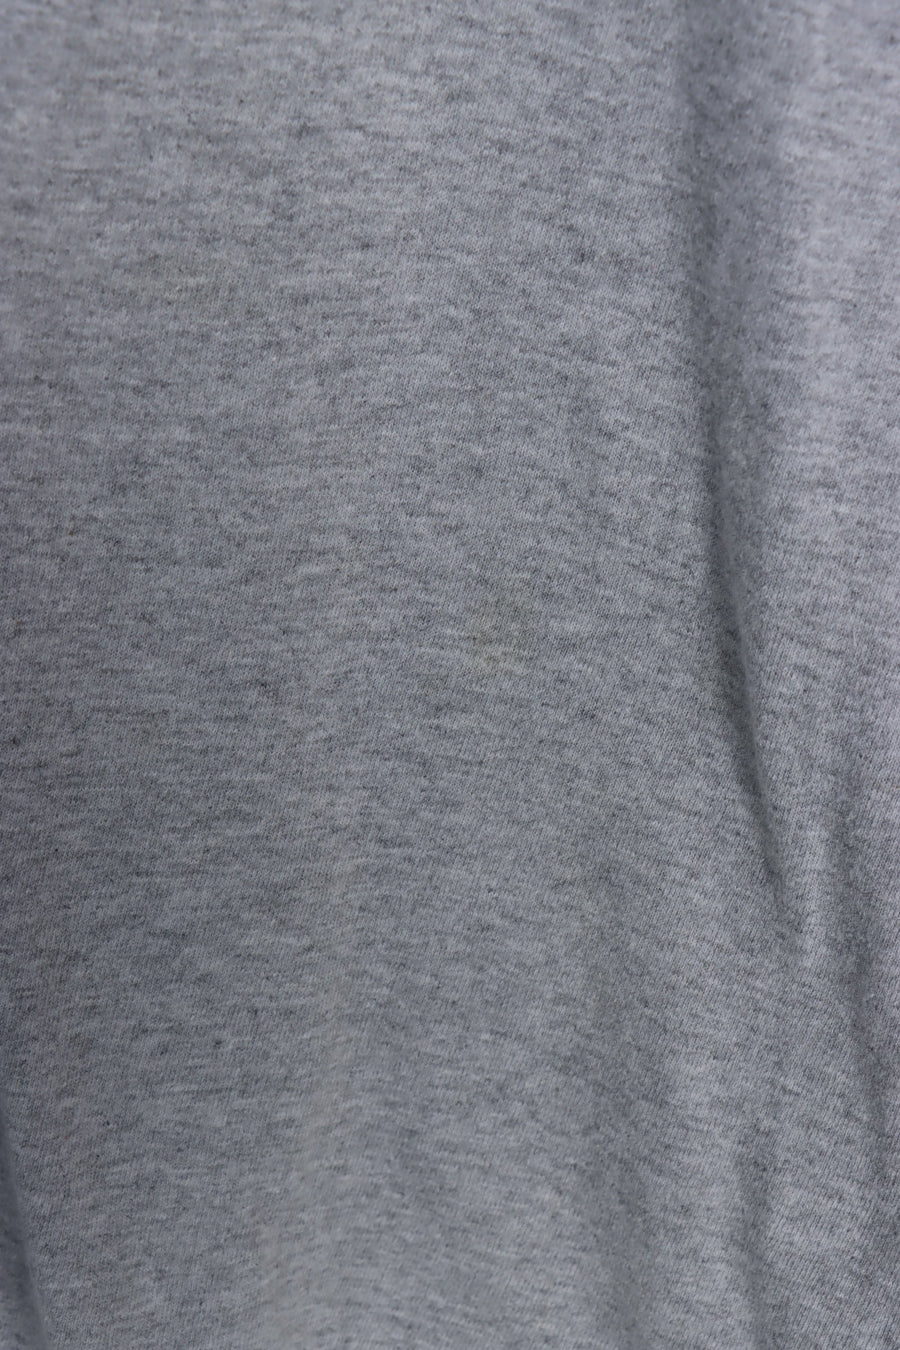 ADIDAS Grey & Black Logo USA Made T-Shirt (S-M)